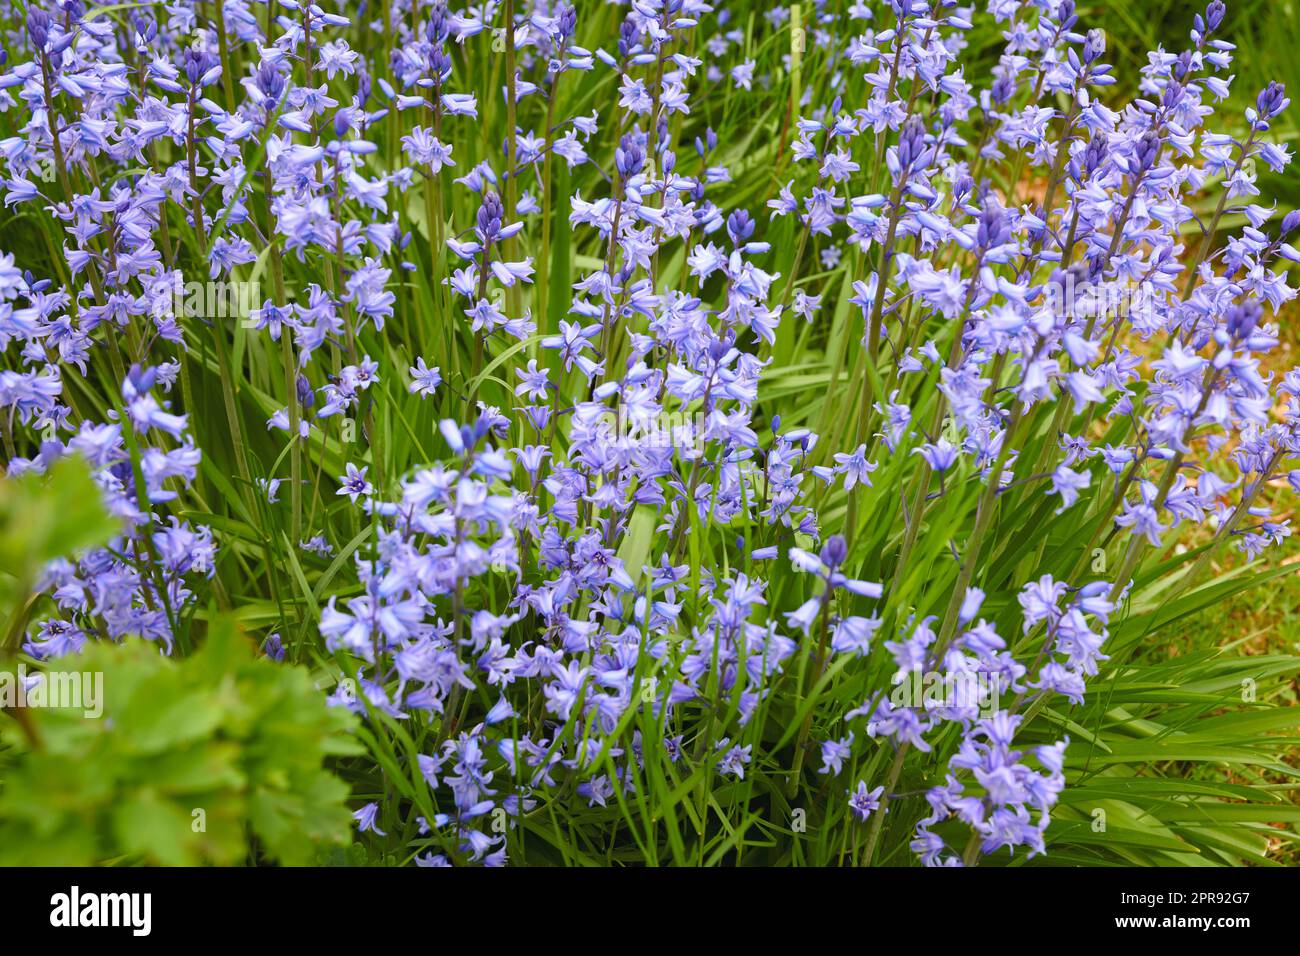 Bunte lila Blumen wachsen in einem Garten. Vervollständigung der wunderschönen spanischen Blauzungenblüte oder Hyacinthoides hispanica-Blätter mit lebendigen Blütenblättern, die an einem sonnigen Tag im Frühling blühen und blühen Stockfoto